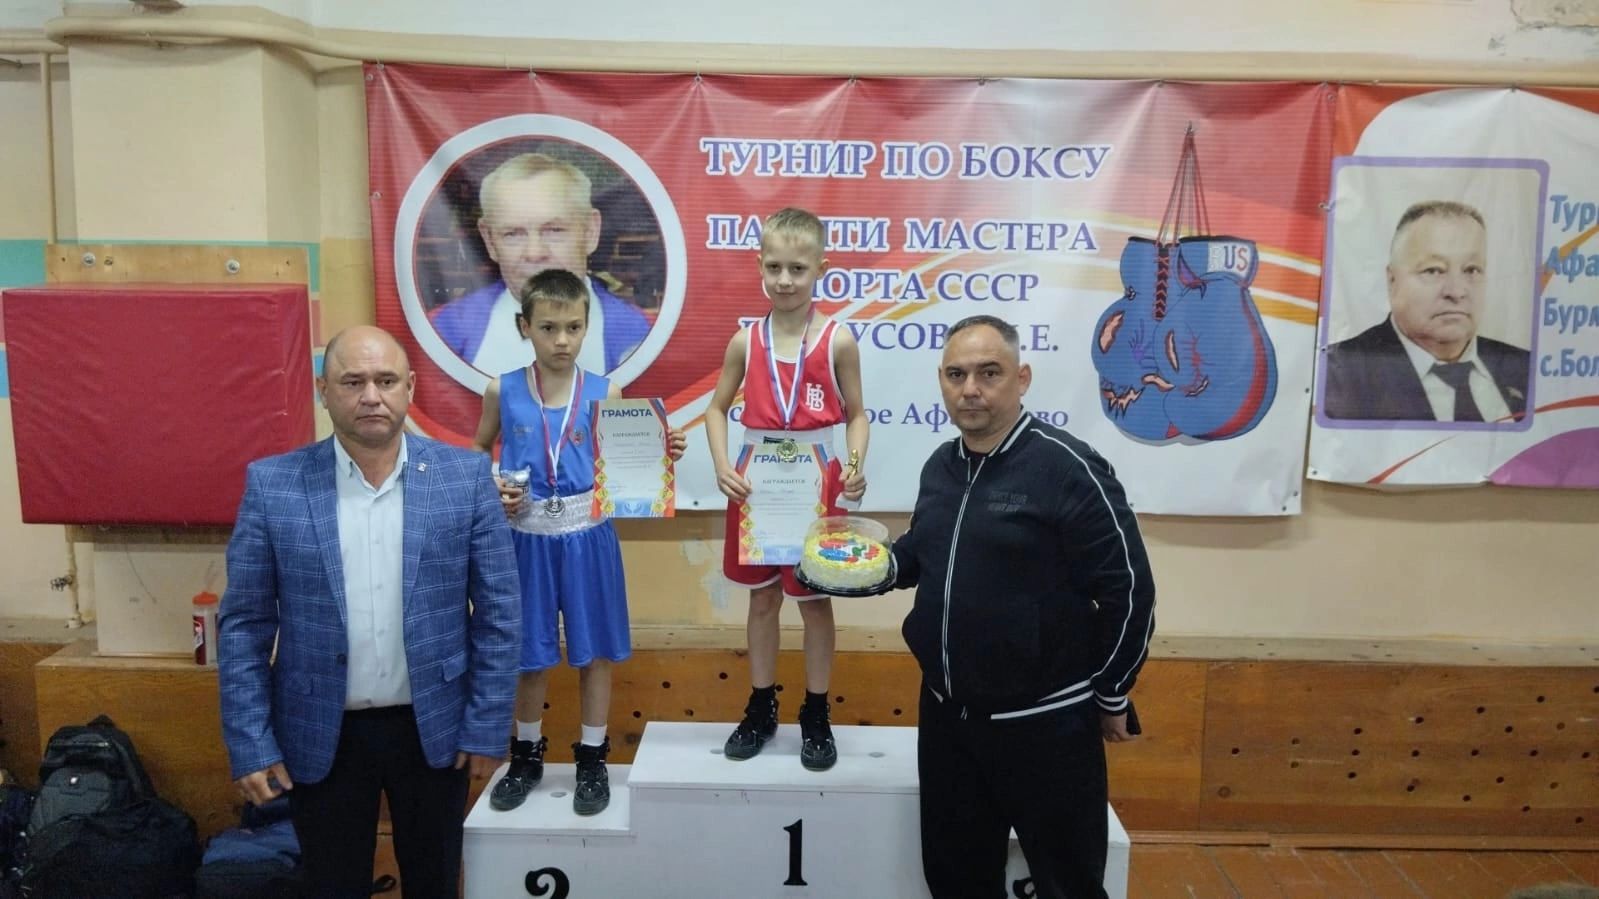 Воспитанники СШ «Батыр» привезли 8 медалей  с Межрегионального турнира по боксу